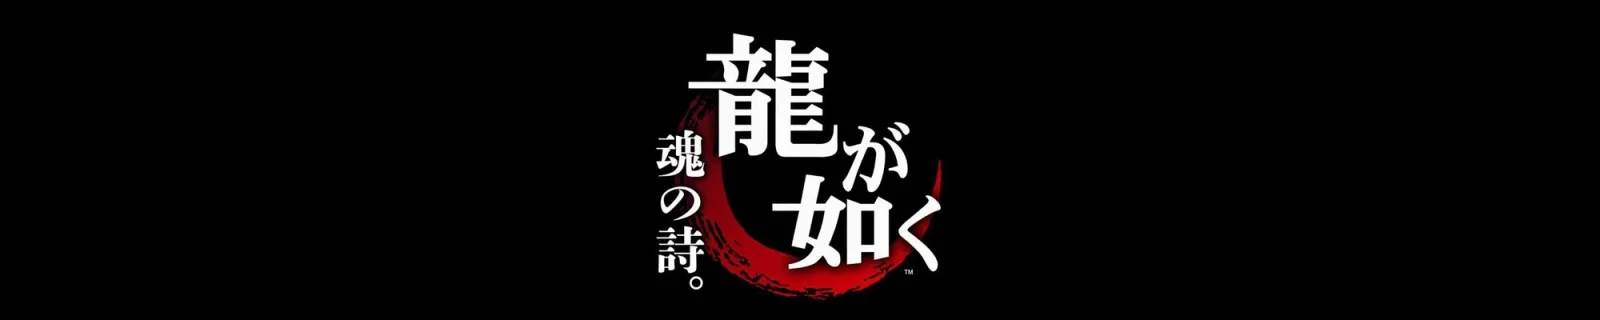 《如龙》真人网络剧11月30日开播